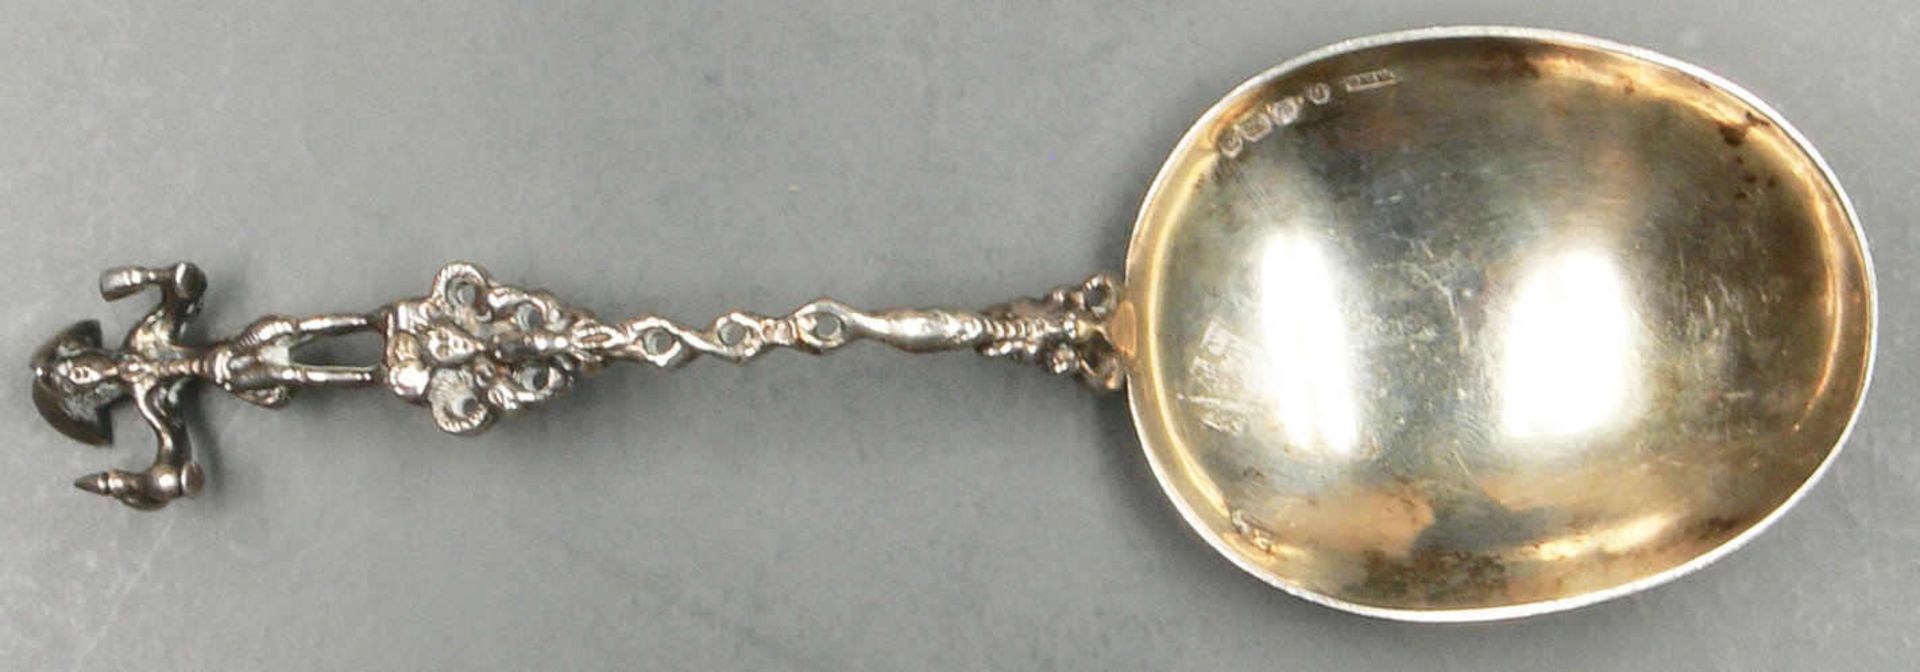 sehr schöner Silber-Tauflöffel, Shefield 1909, S.B.L. gepunzt, guter Zustand, Silberschmiede-